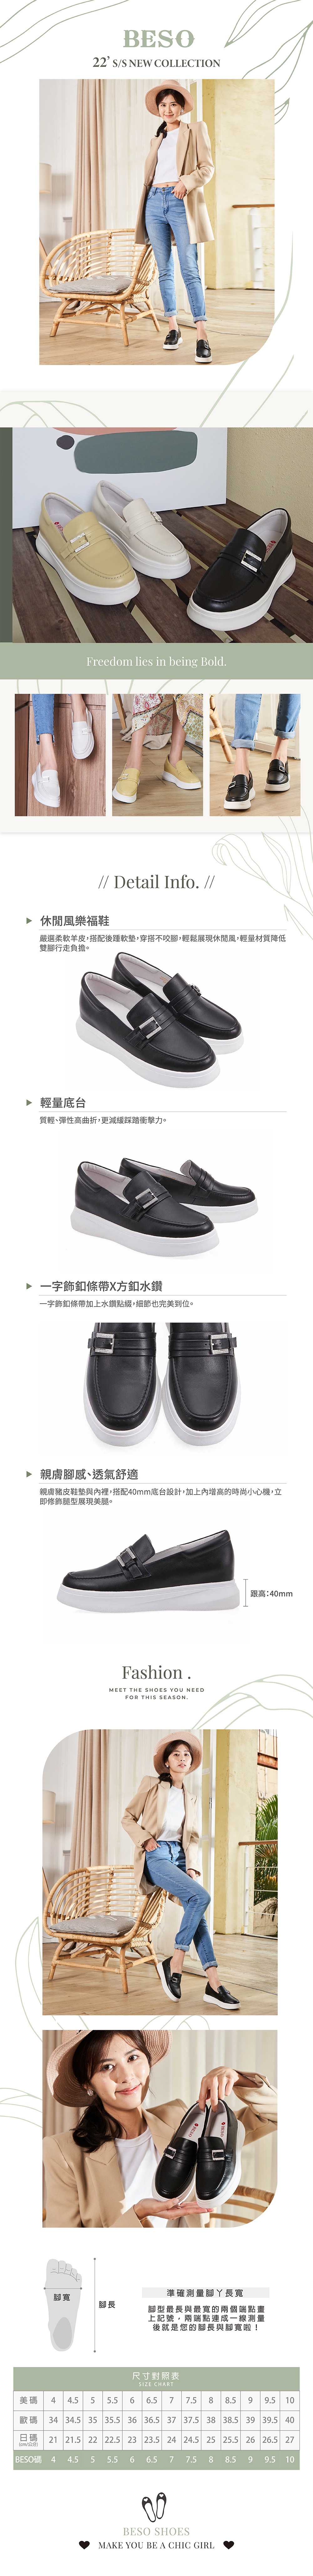 BESO 柔軟羊皮條帶水鑽飾釦內增高休閒鞋-黑色-阿瘦官方購物網